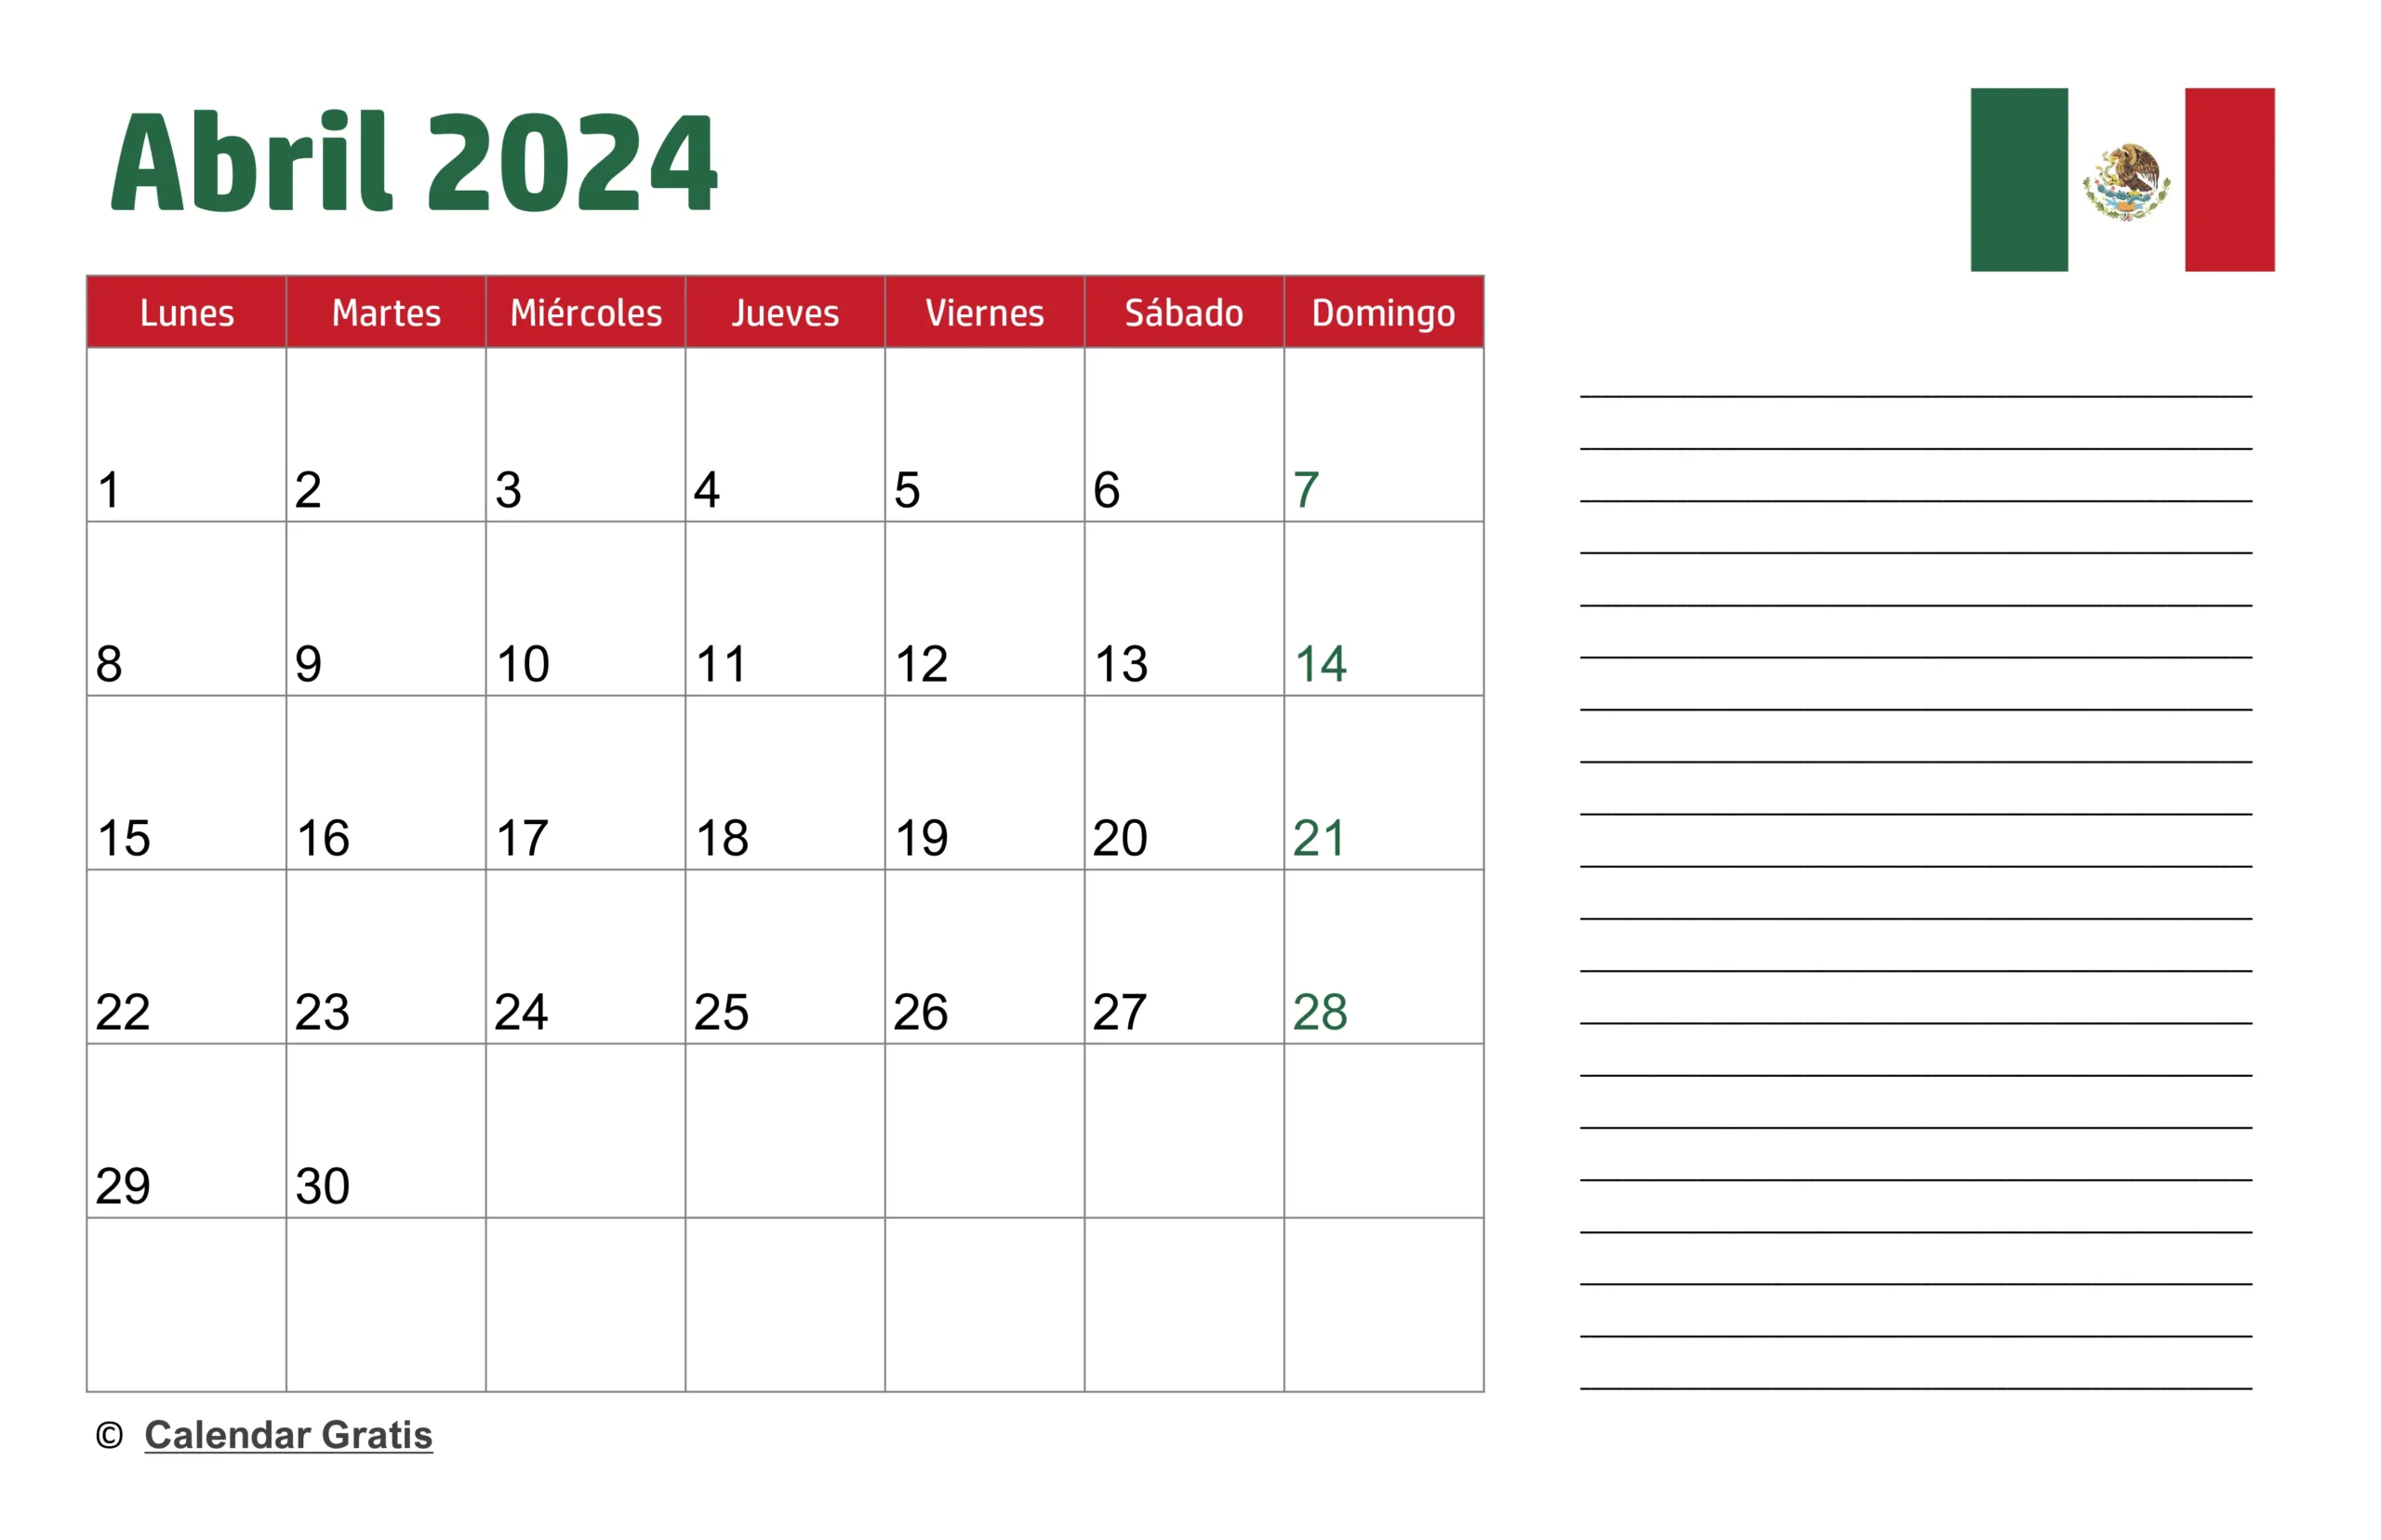 Calendario Abril 2024 México con Notas, en español con la bandera de México en la esquina superior derecha, listo para anotaciones y citas.